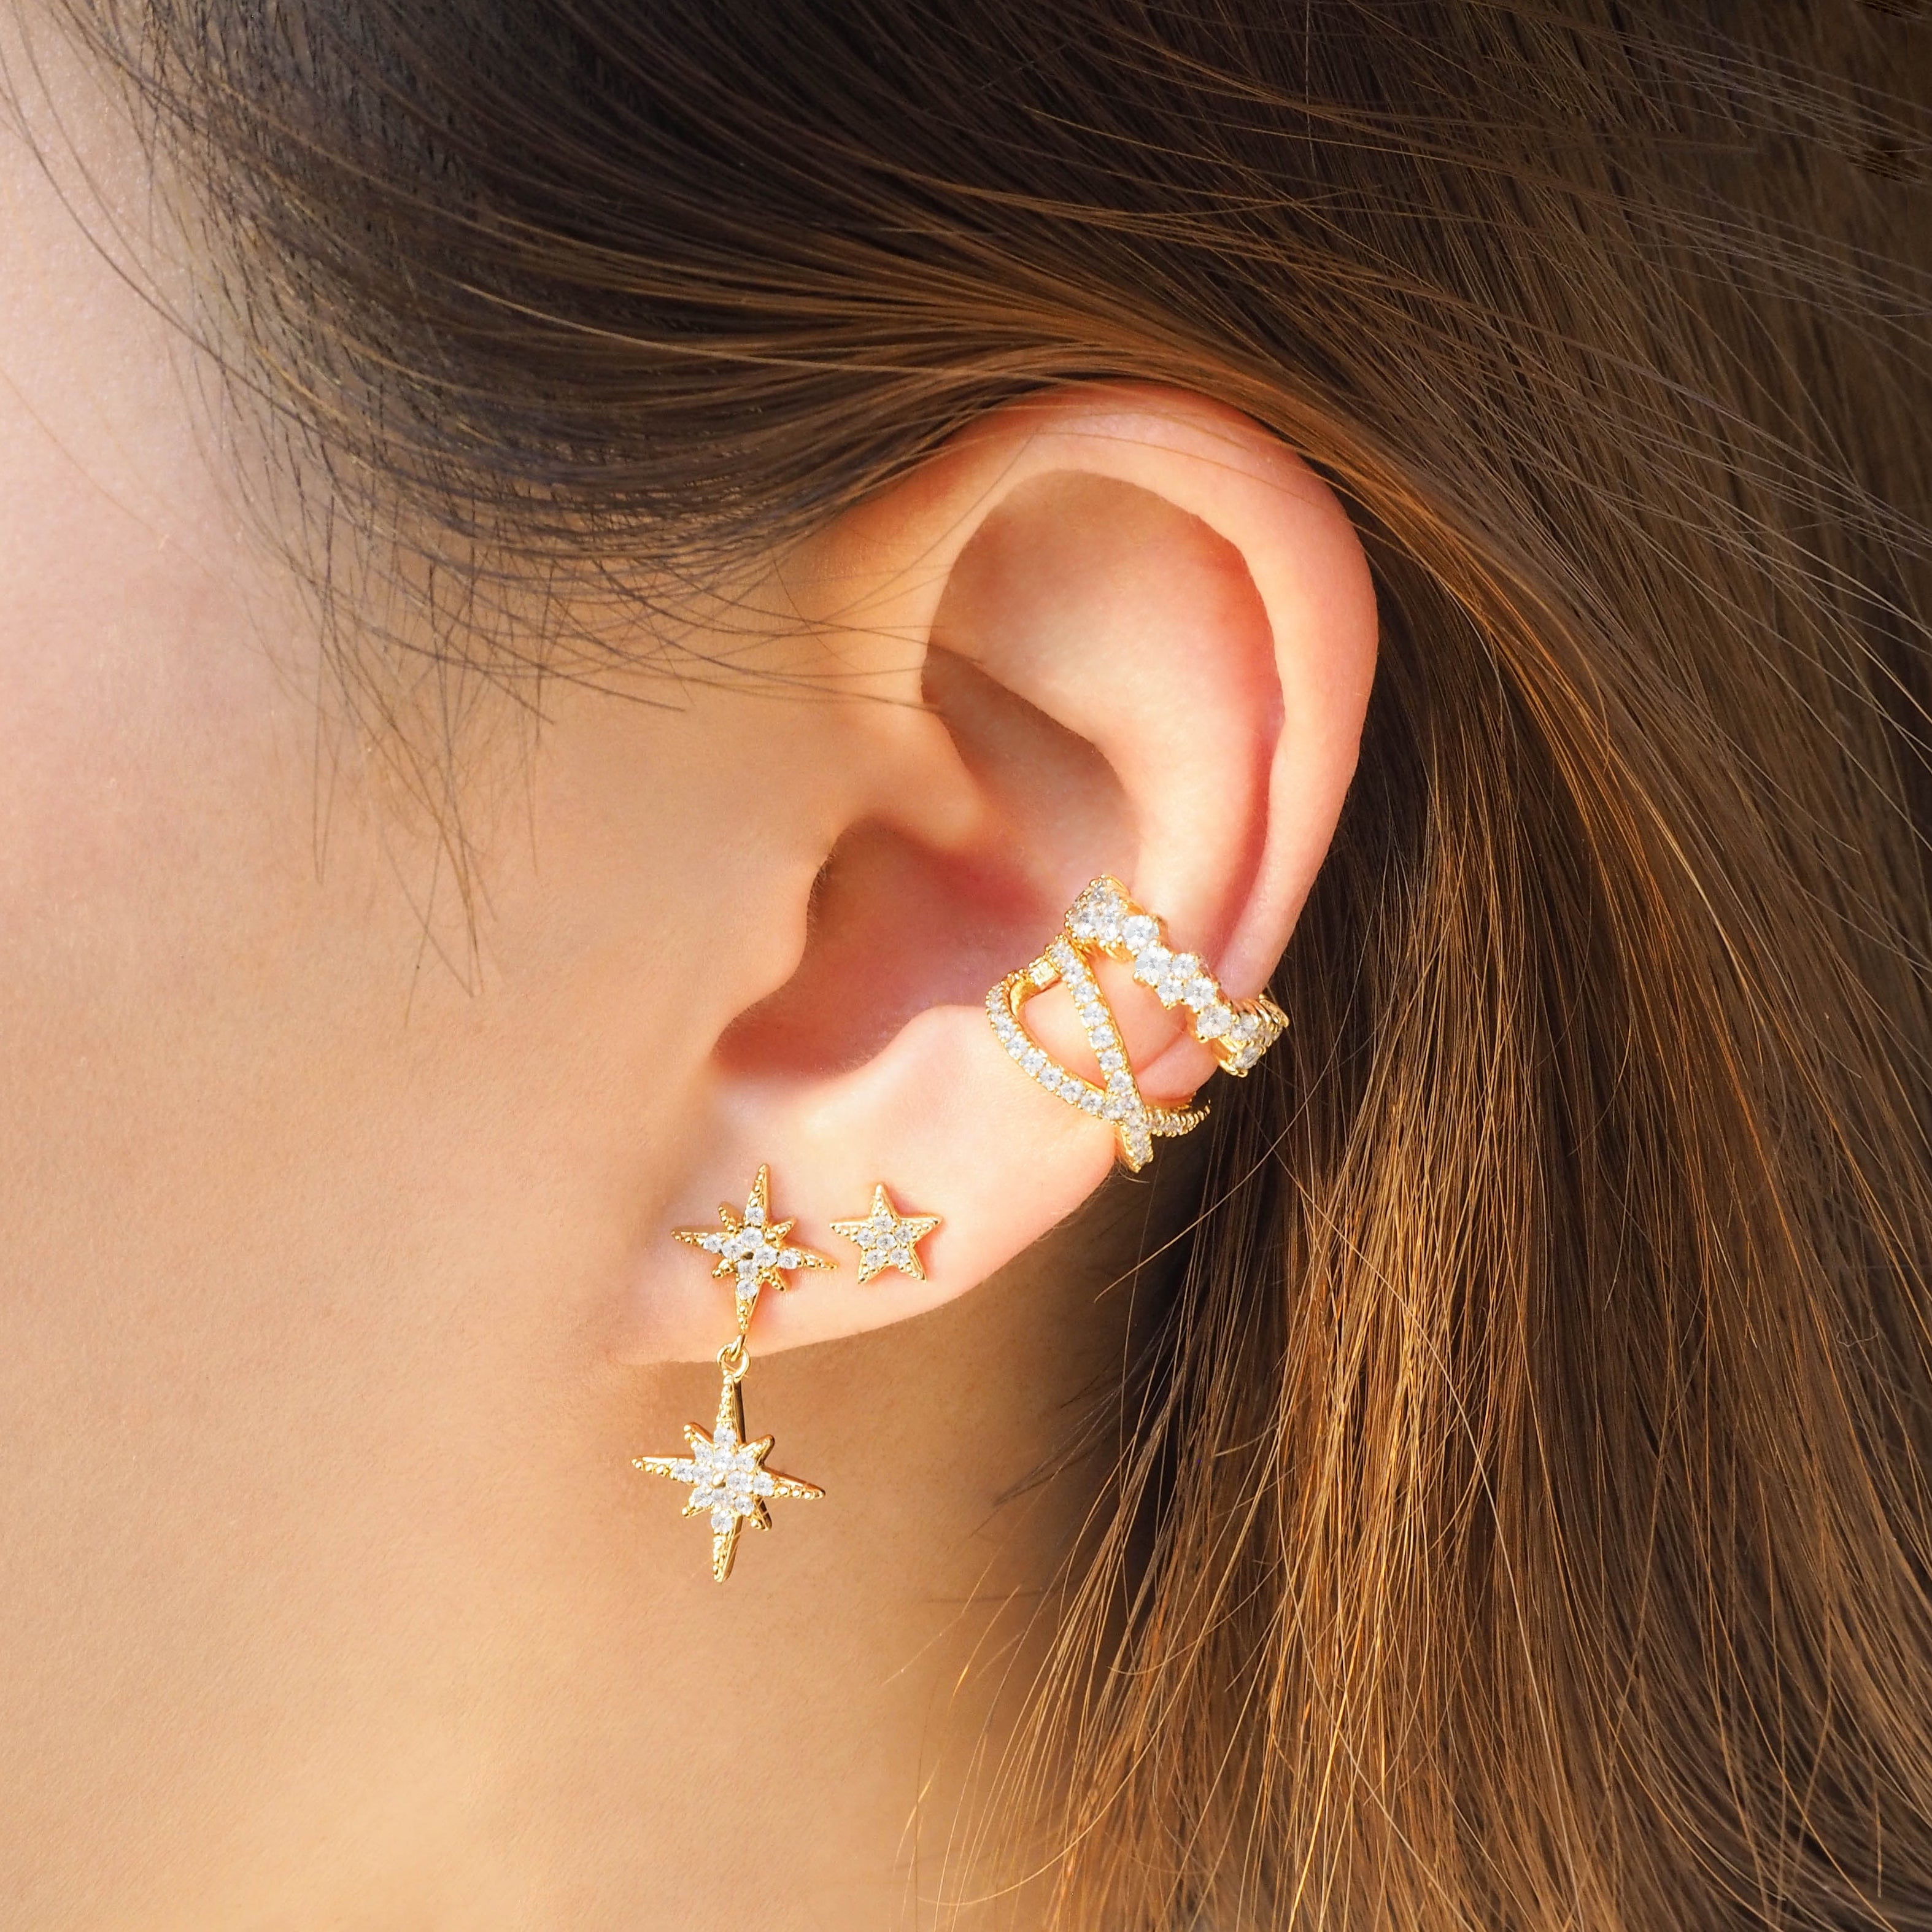 Crystal Stars Earrings